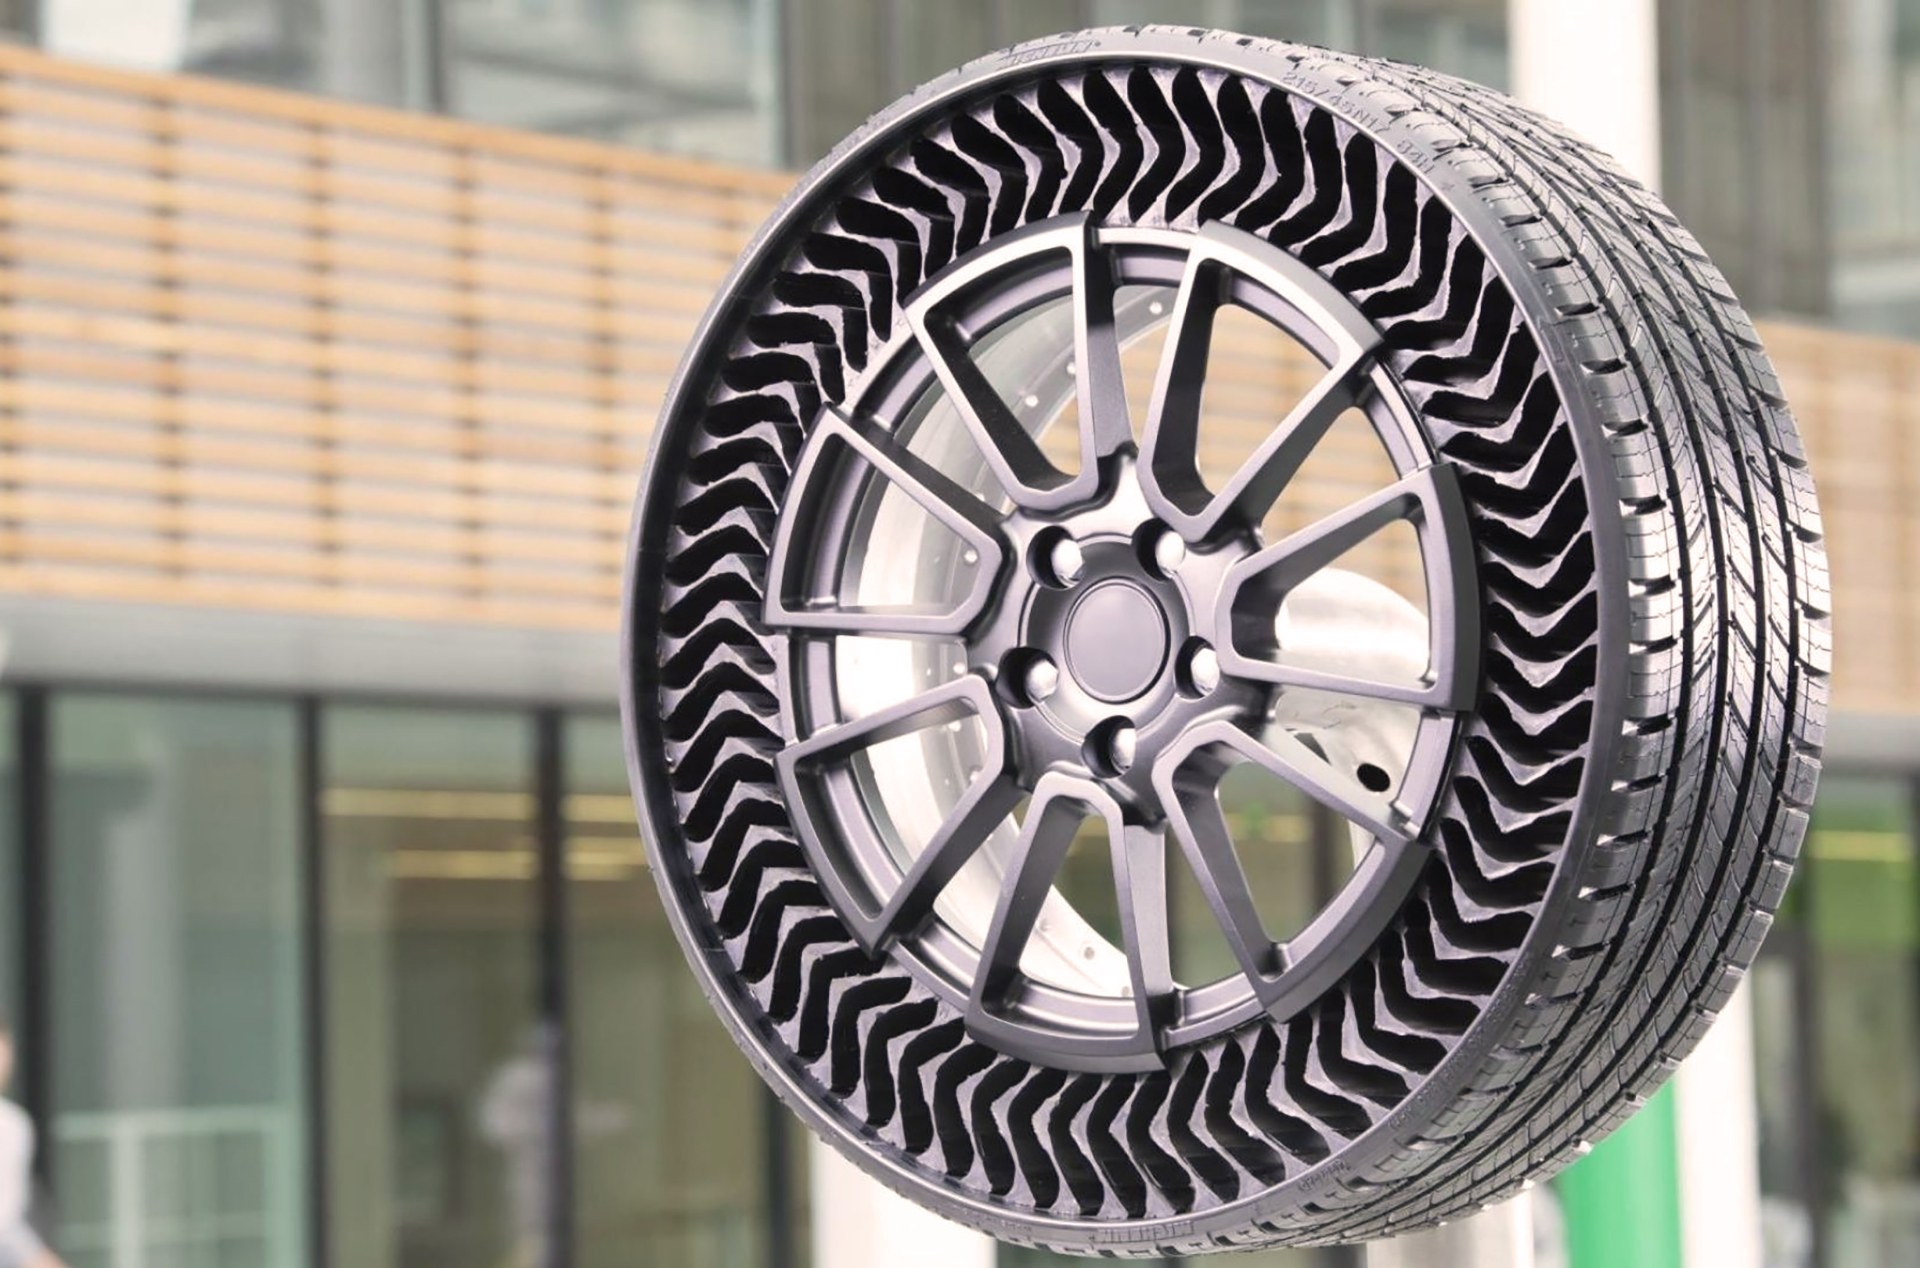  El concepto se llama Uptis, que significa Unique Puncture-proof Tire System o Sistema único de neumáticos a prueba de pinchaduras